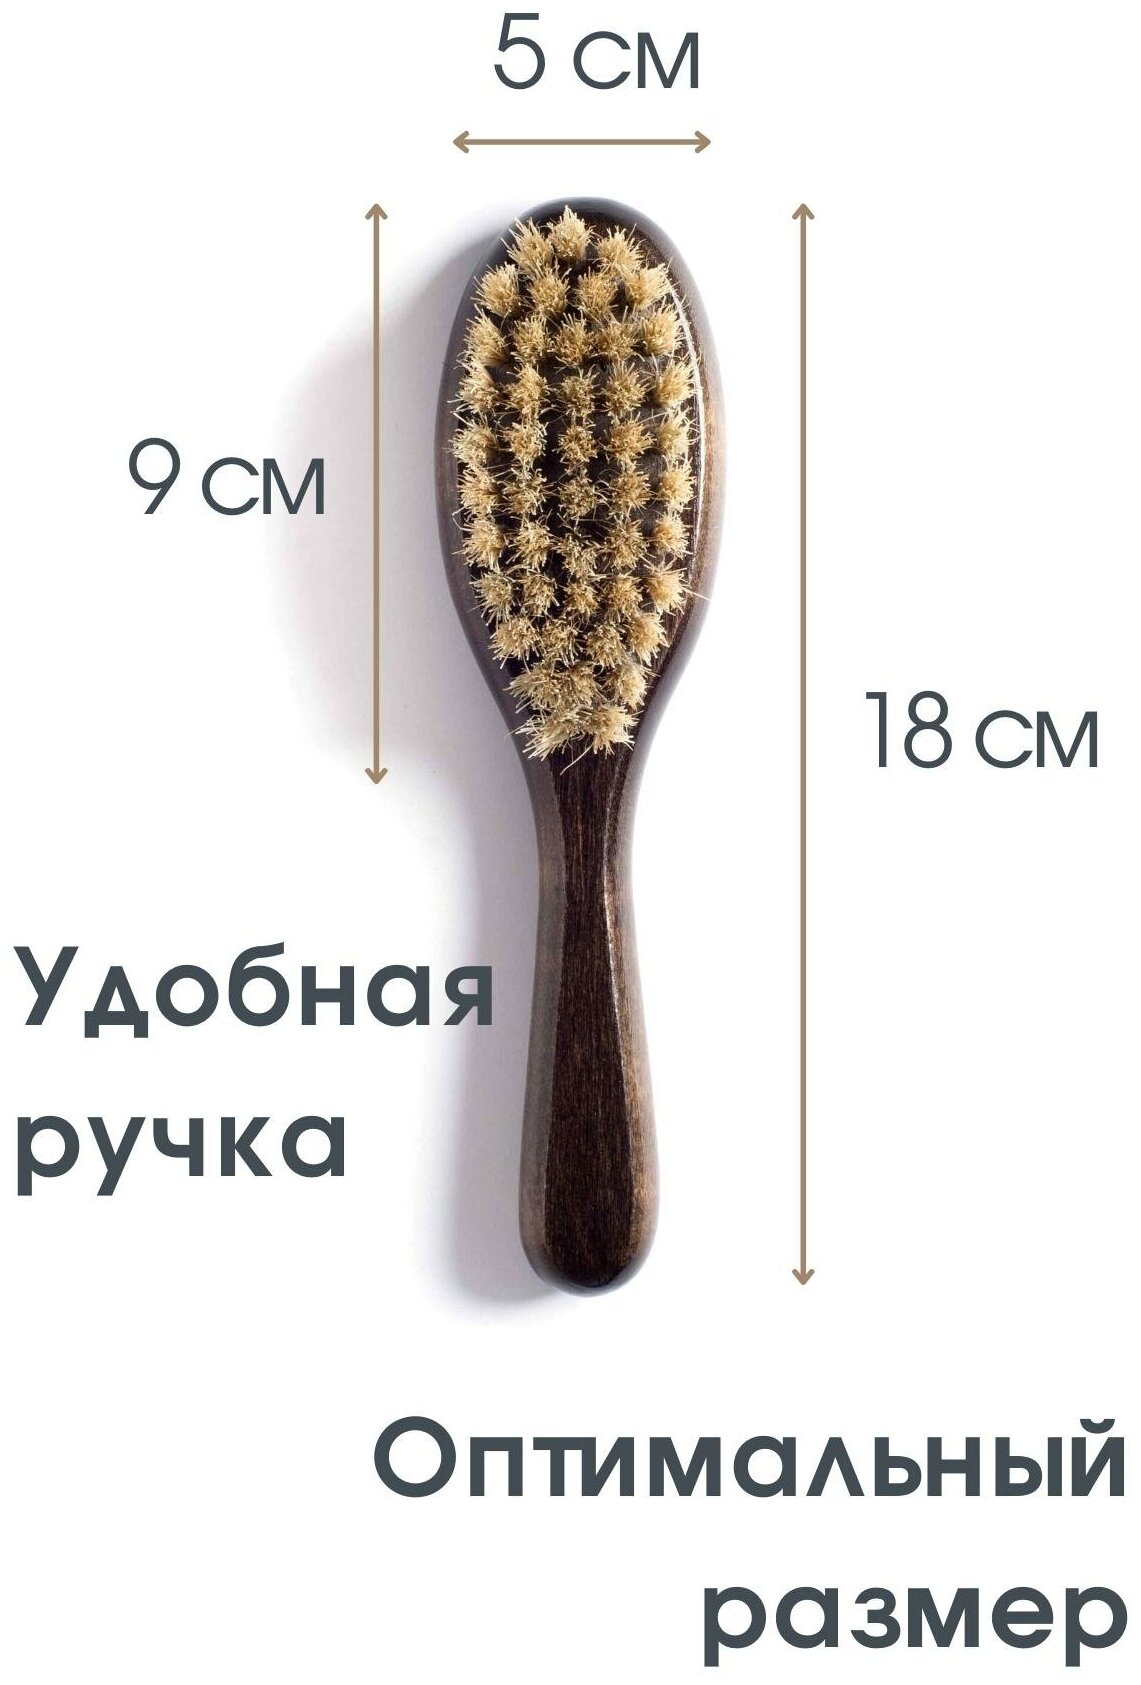 Щетка для бороды и усов Gledenika из щетины кабана средней жесткости, массажная, с ручкой / Оригинальные подарки мужчине